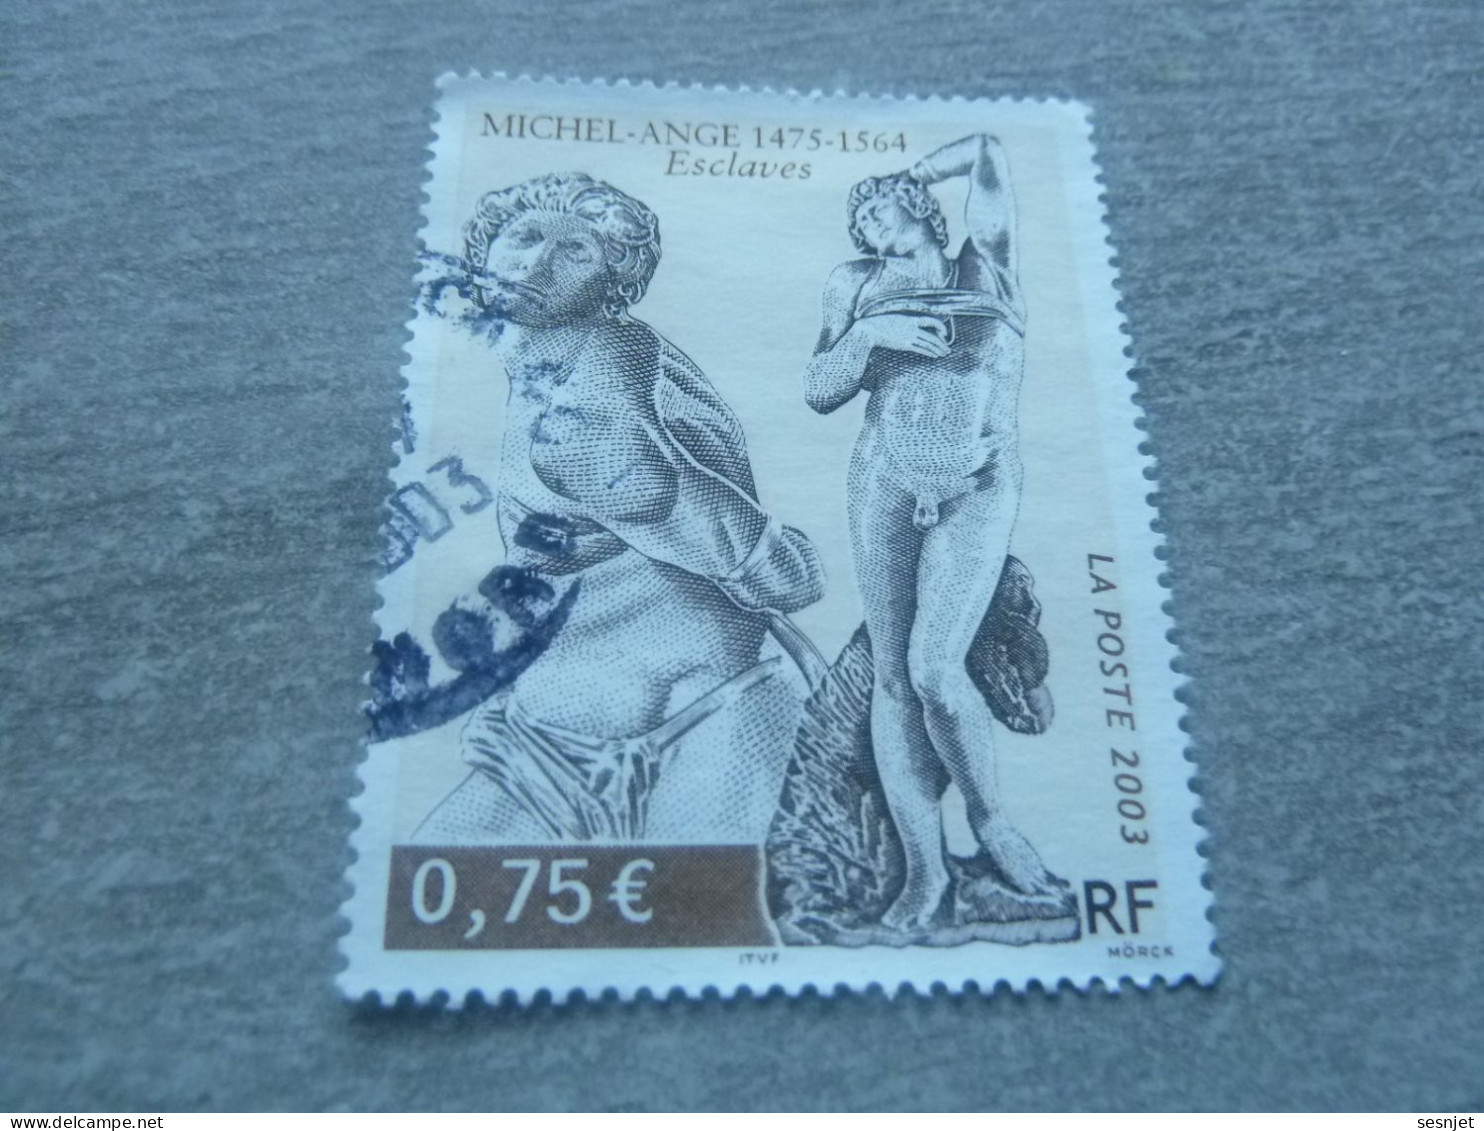 Michel-Ange (1475-1564) - Esclaves - 0.75 € - Yt 3558 - Multicolore - Oblitéré - Année 2003 - - Sculpture